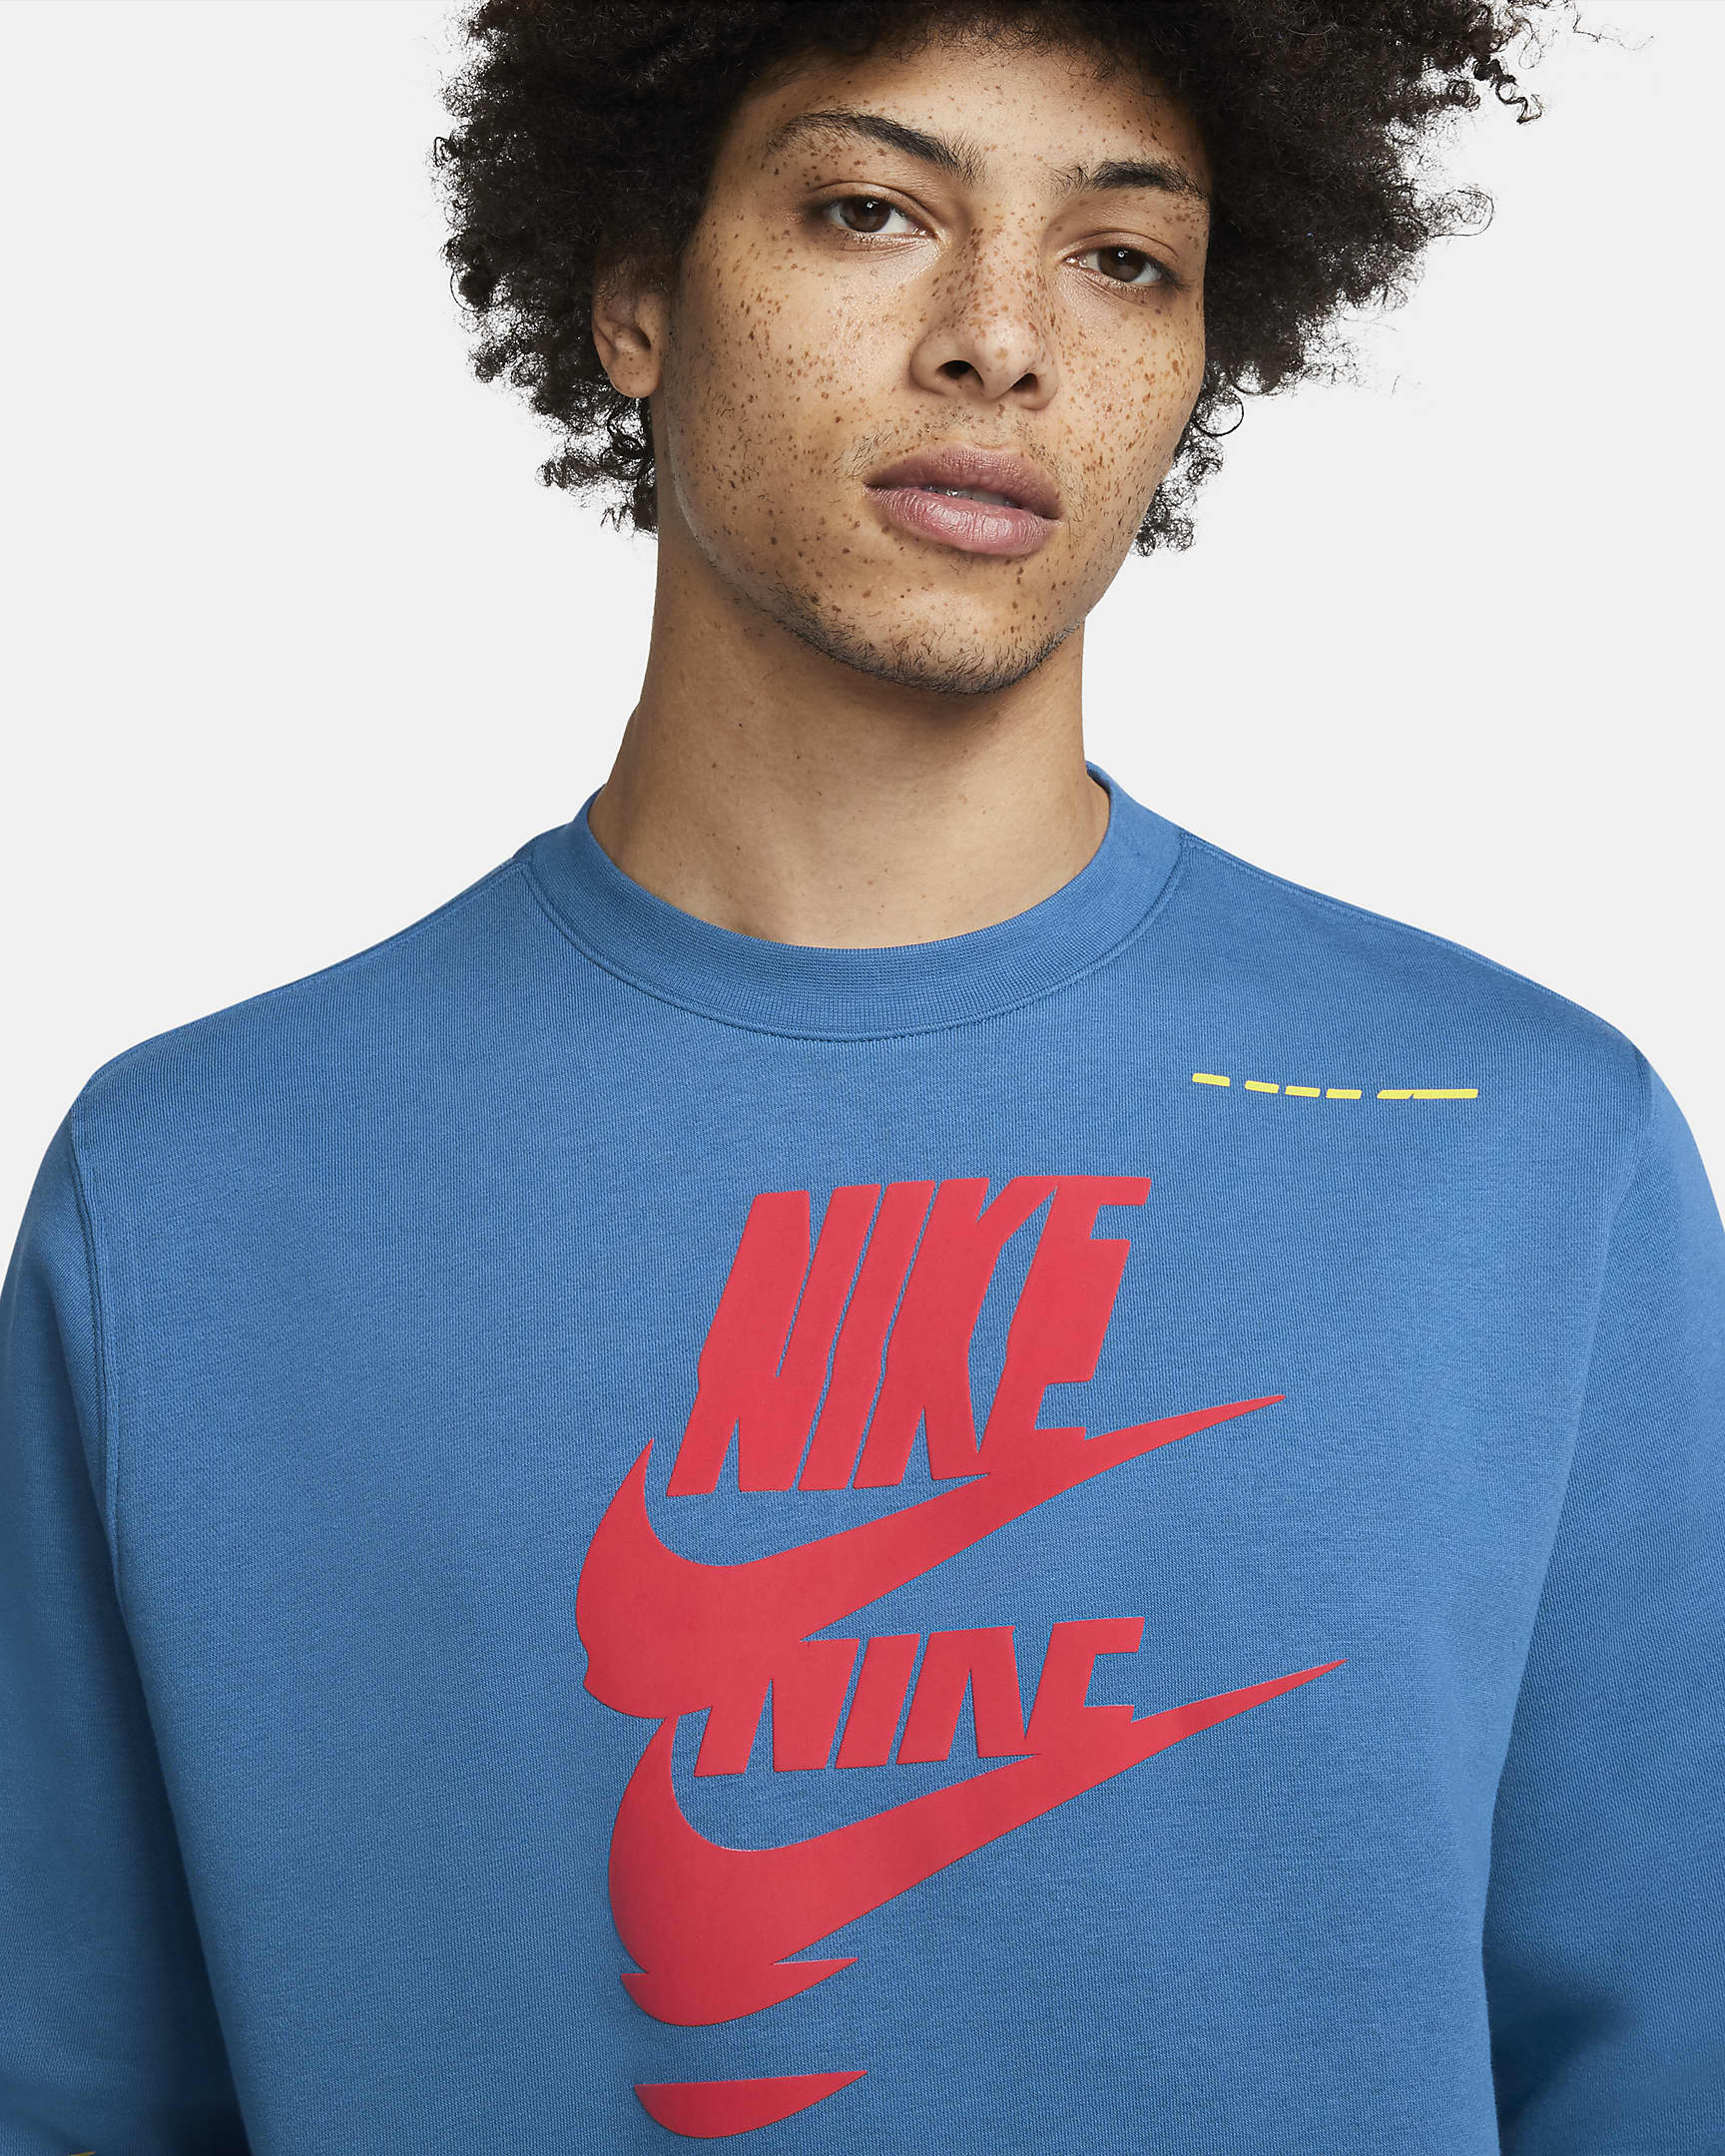 Nike Sportswear Sport Essentials+ Men's Fleece Crew. Nike.com